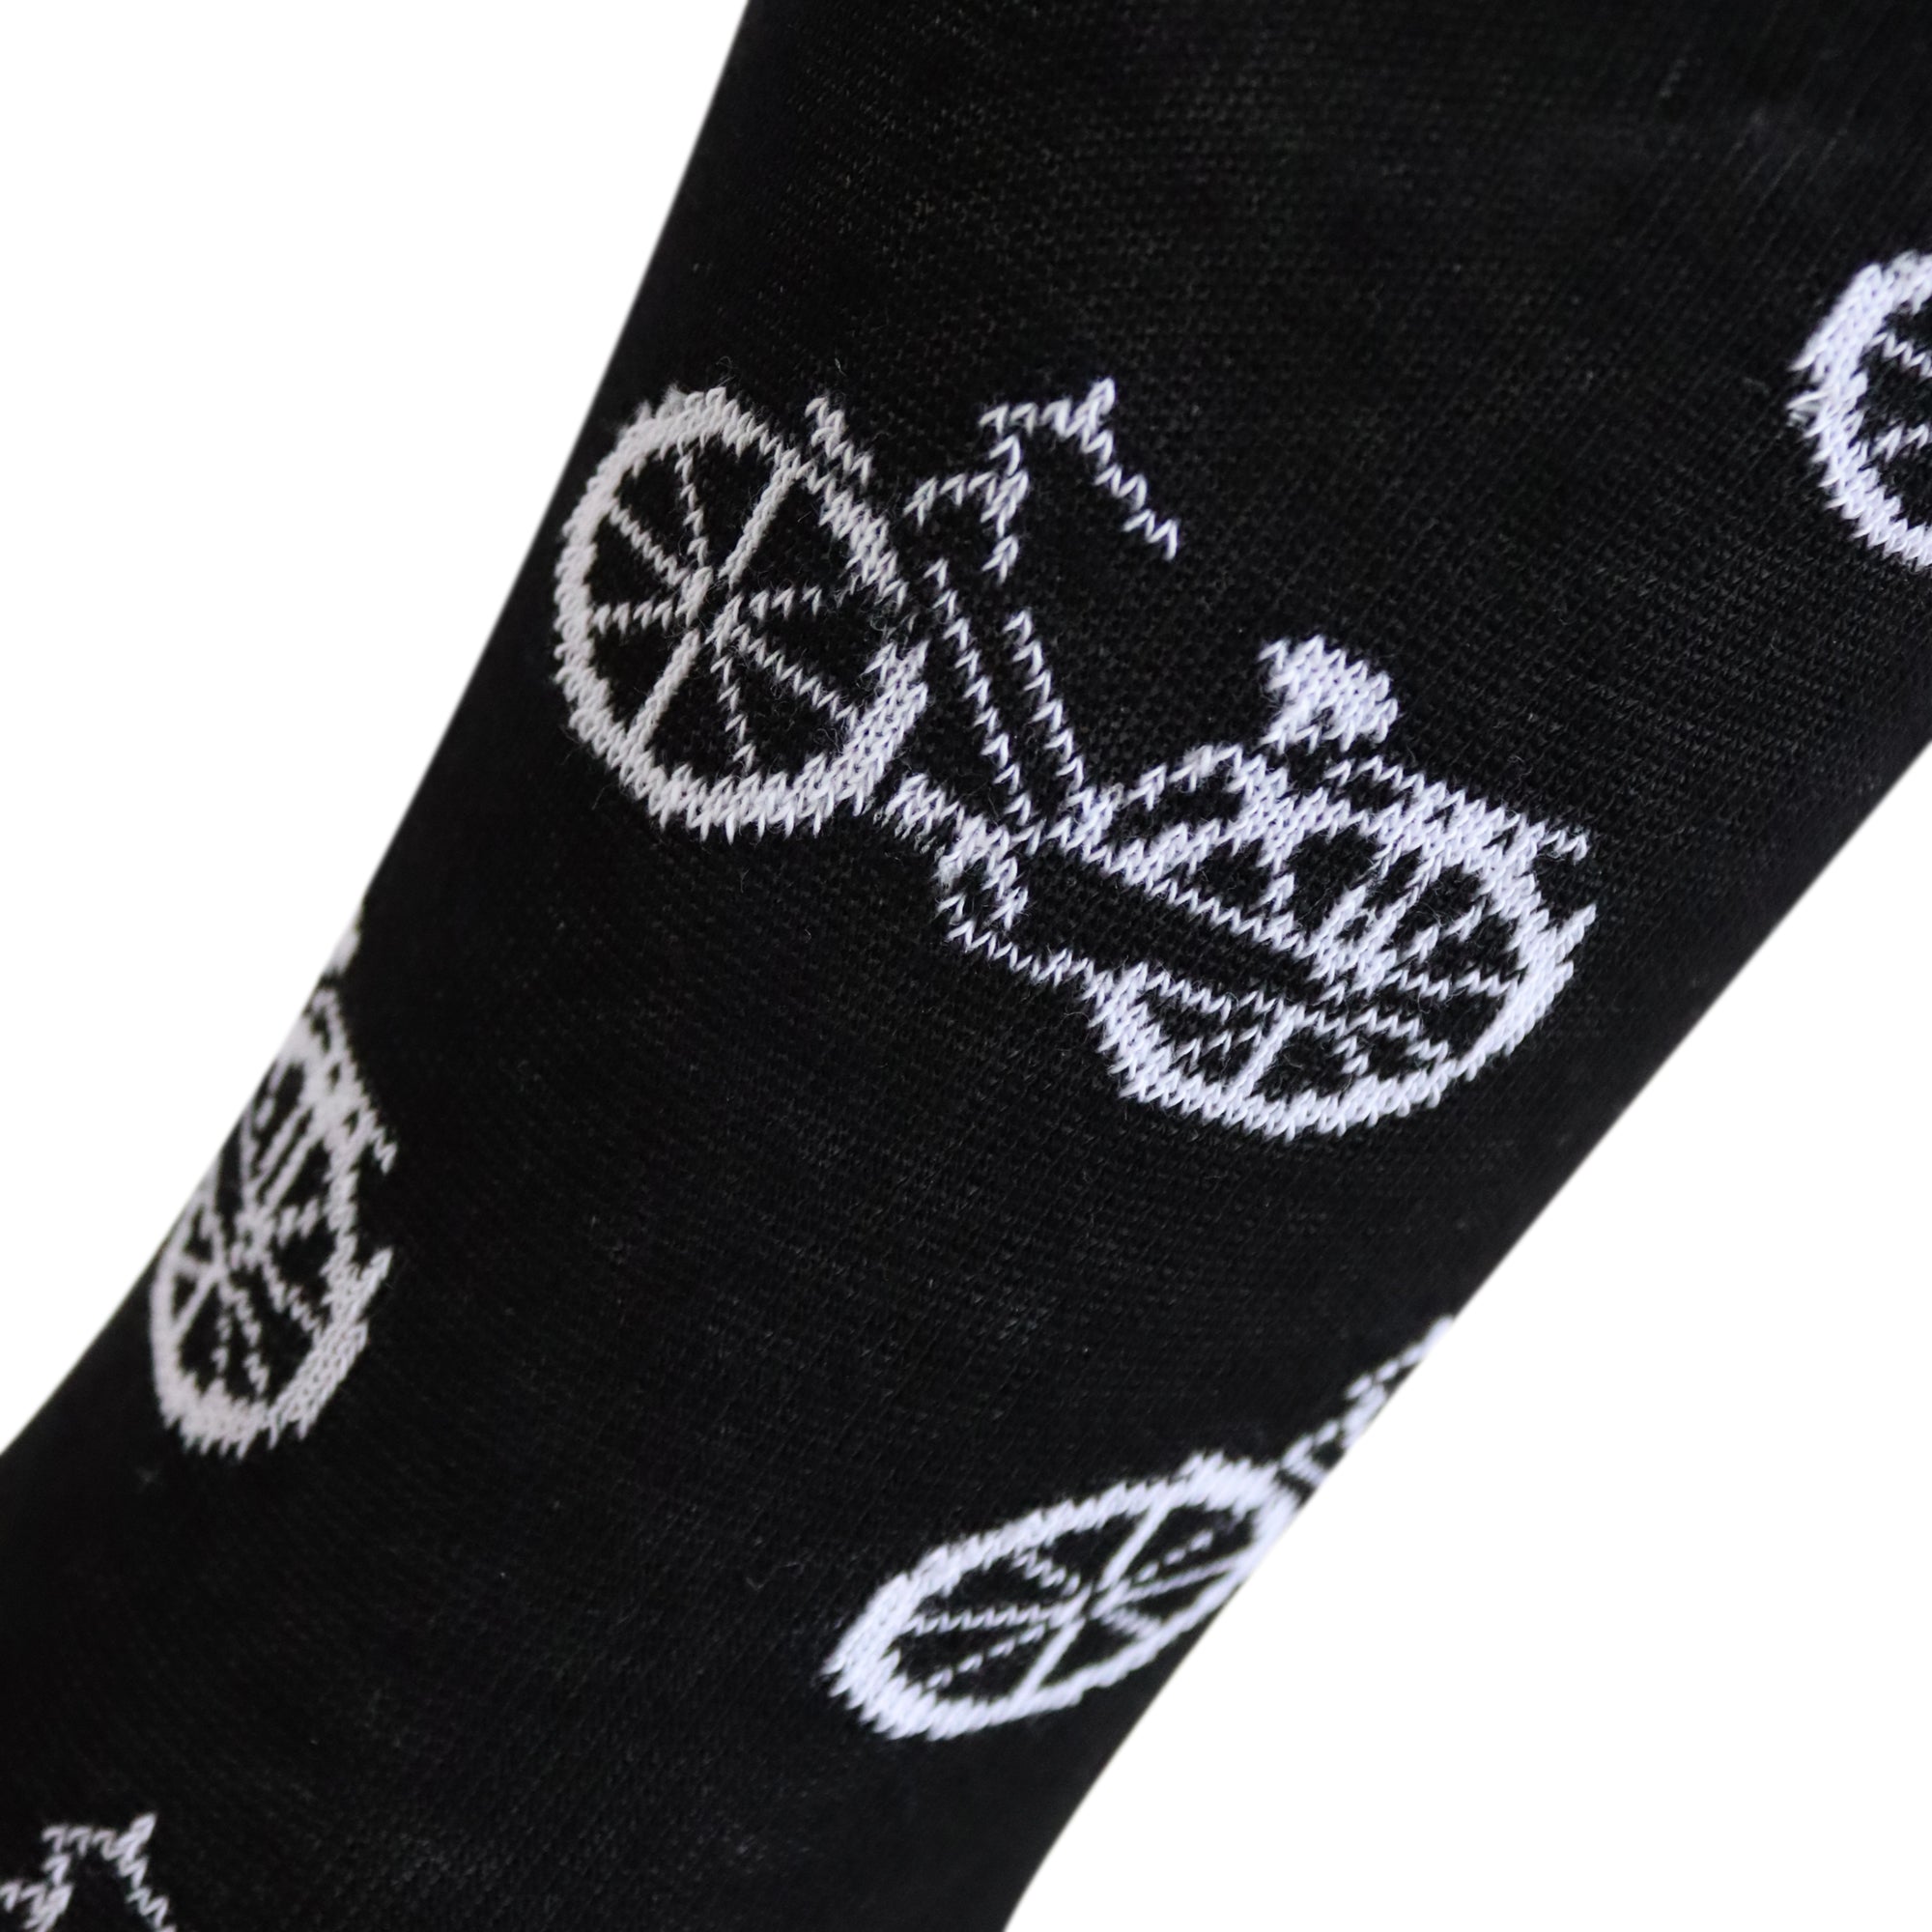 Louluu Bicycle Crew Socks